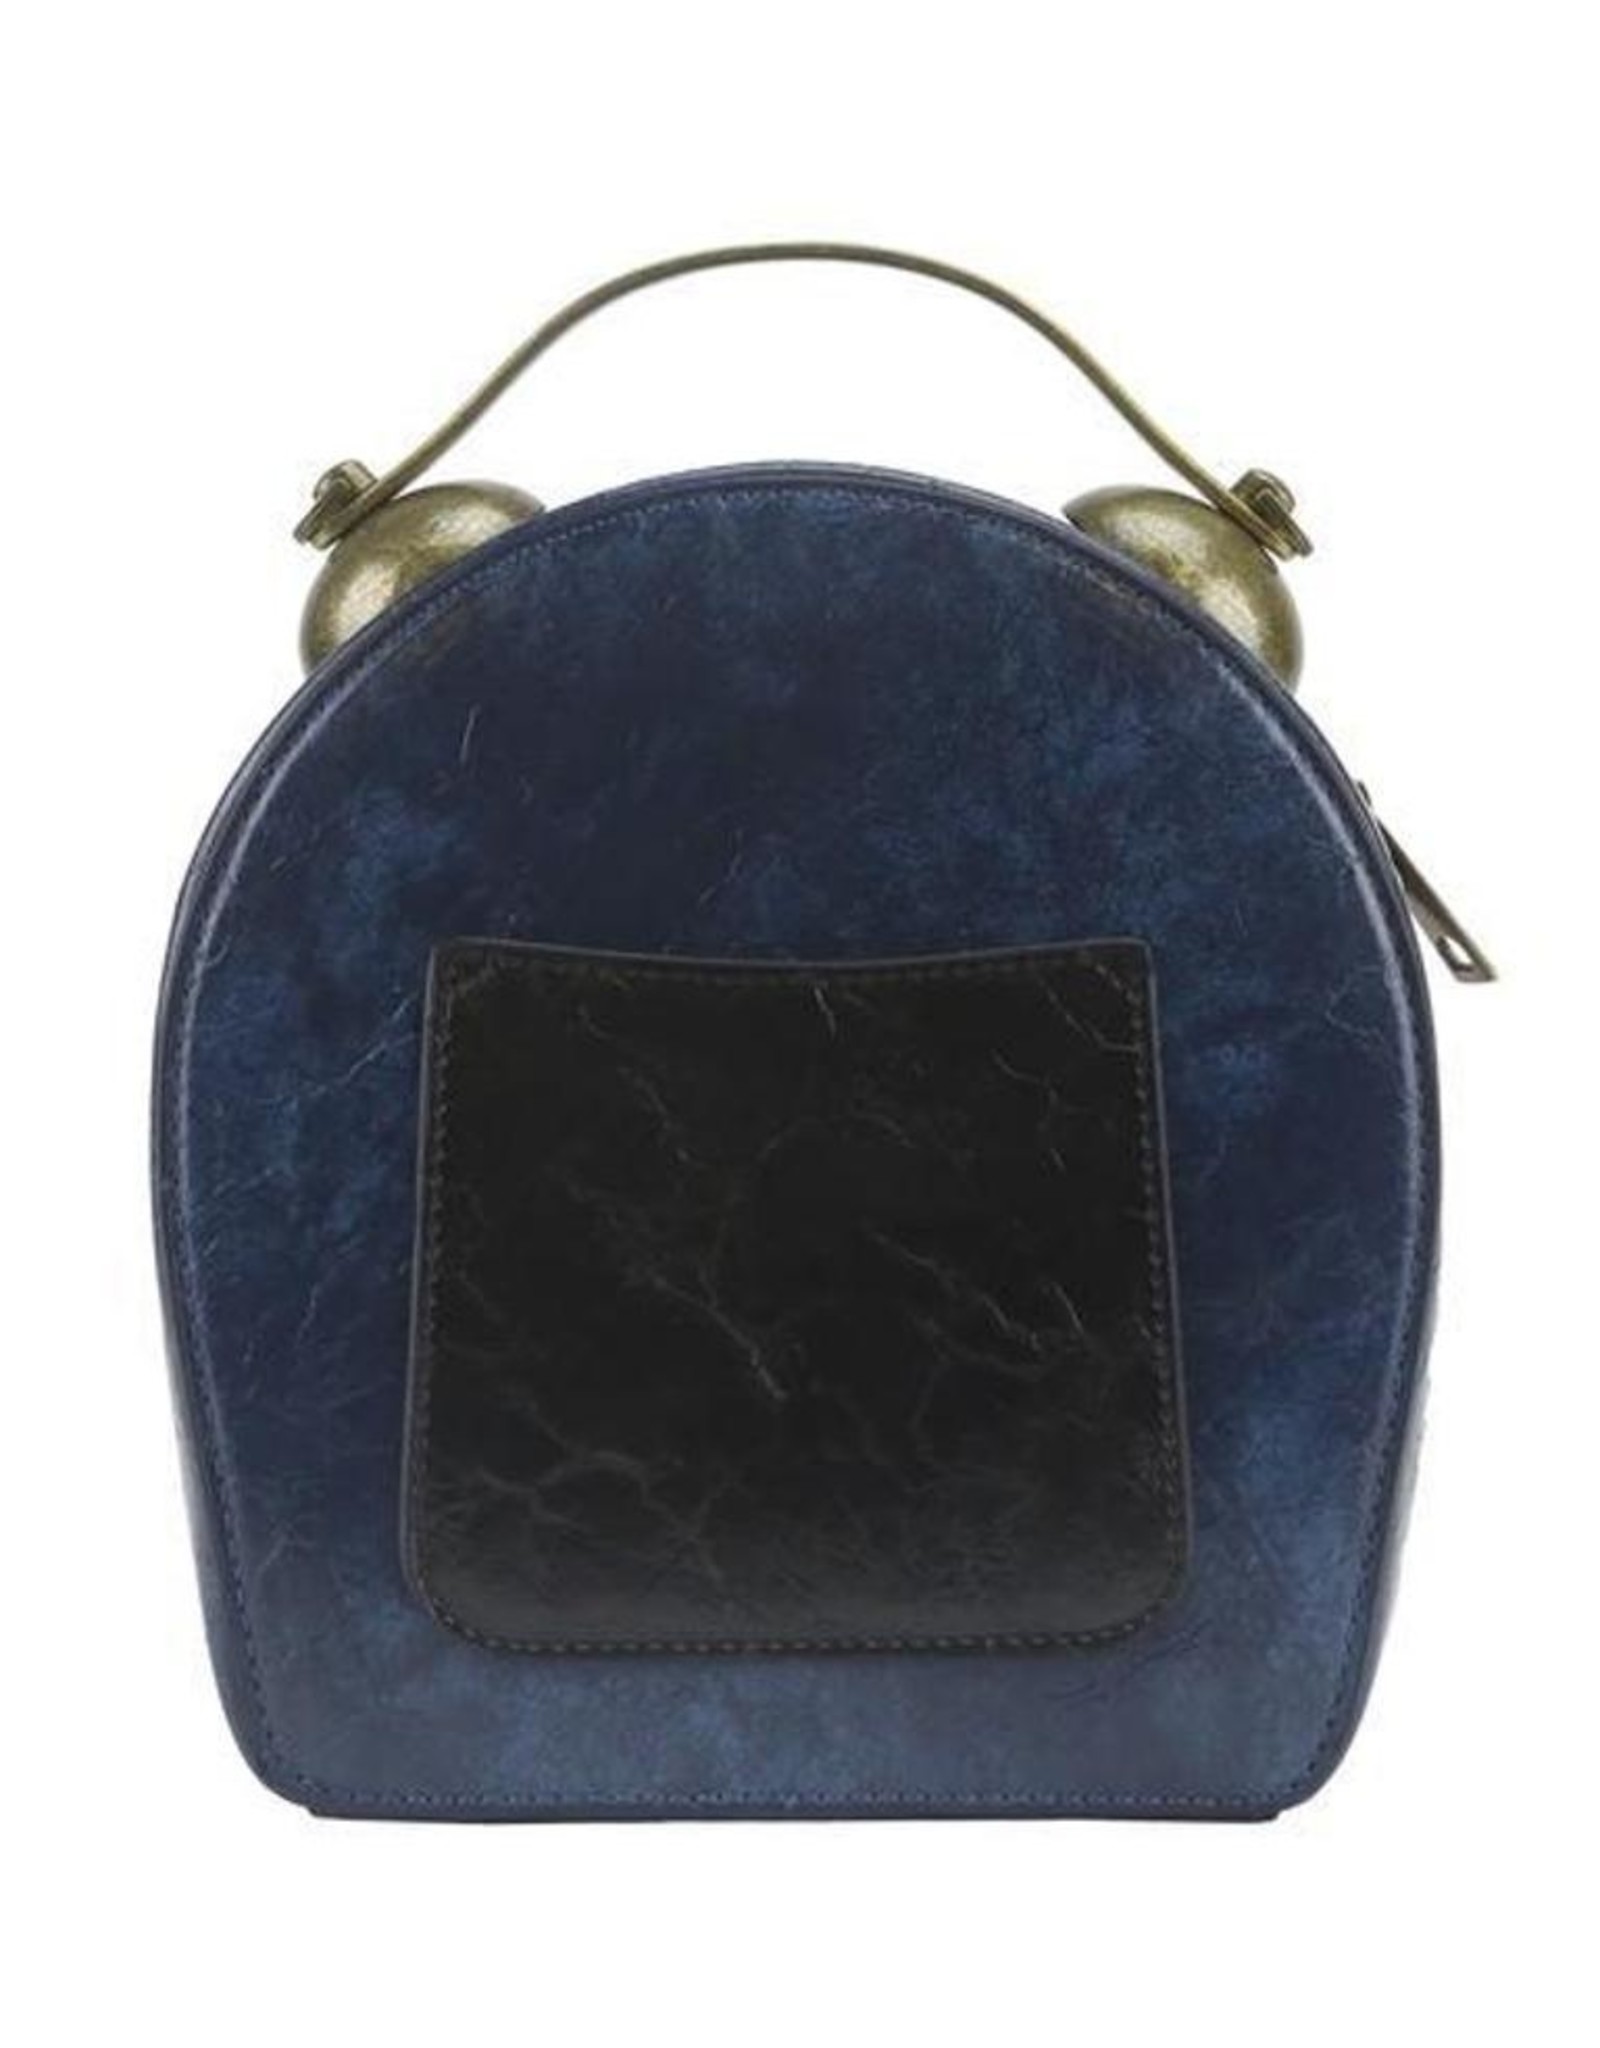 Magic Bags Steampunk tassen Gotic tassen - Steampunk Vintage Klok handtas met echt werkende Klok (blauw)